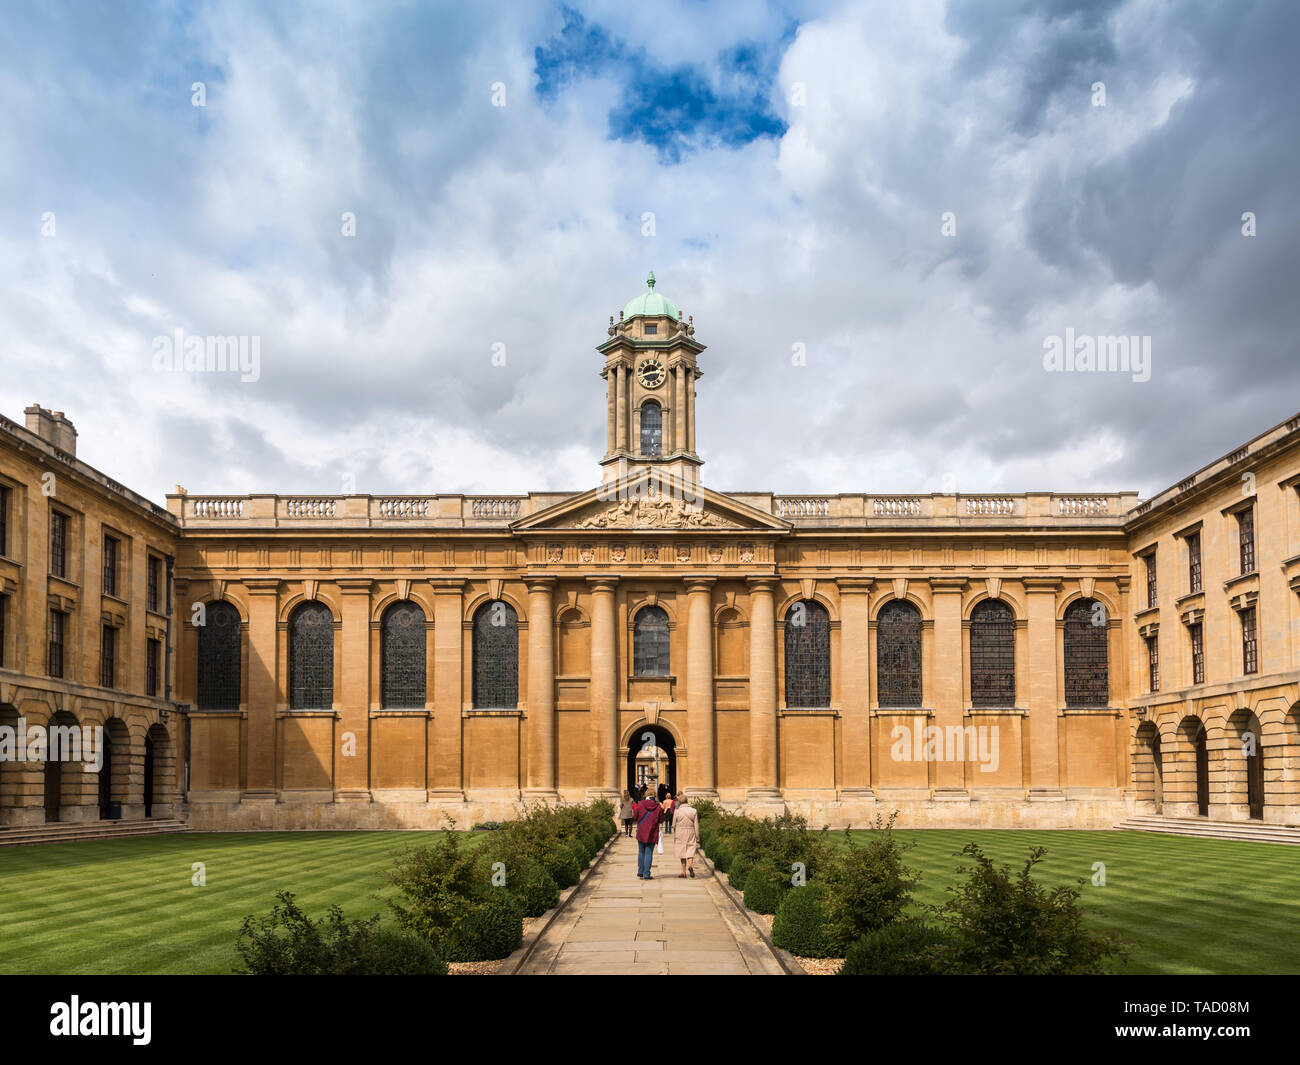 Queen's College Quad anteriore, Oxford University, Regno Unito Foto Stock